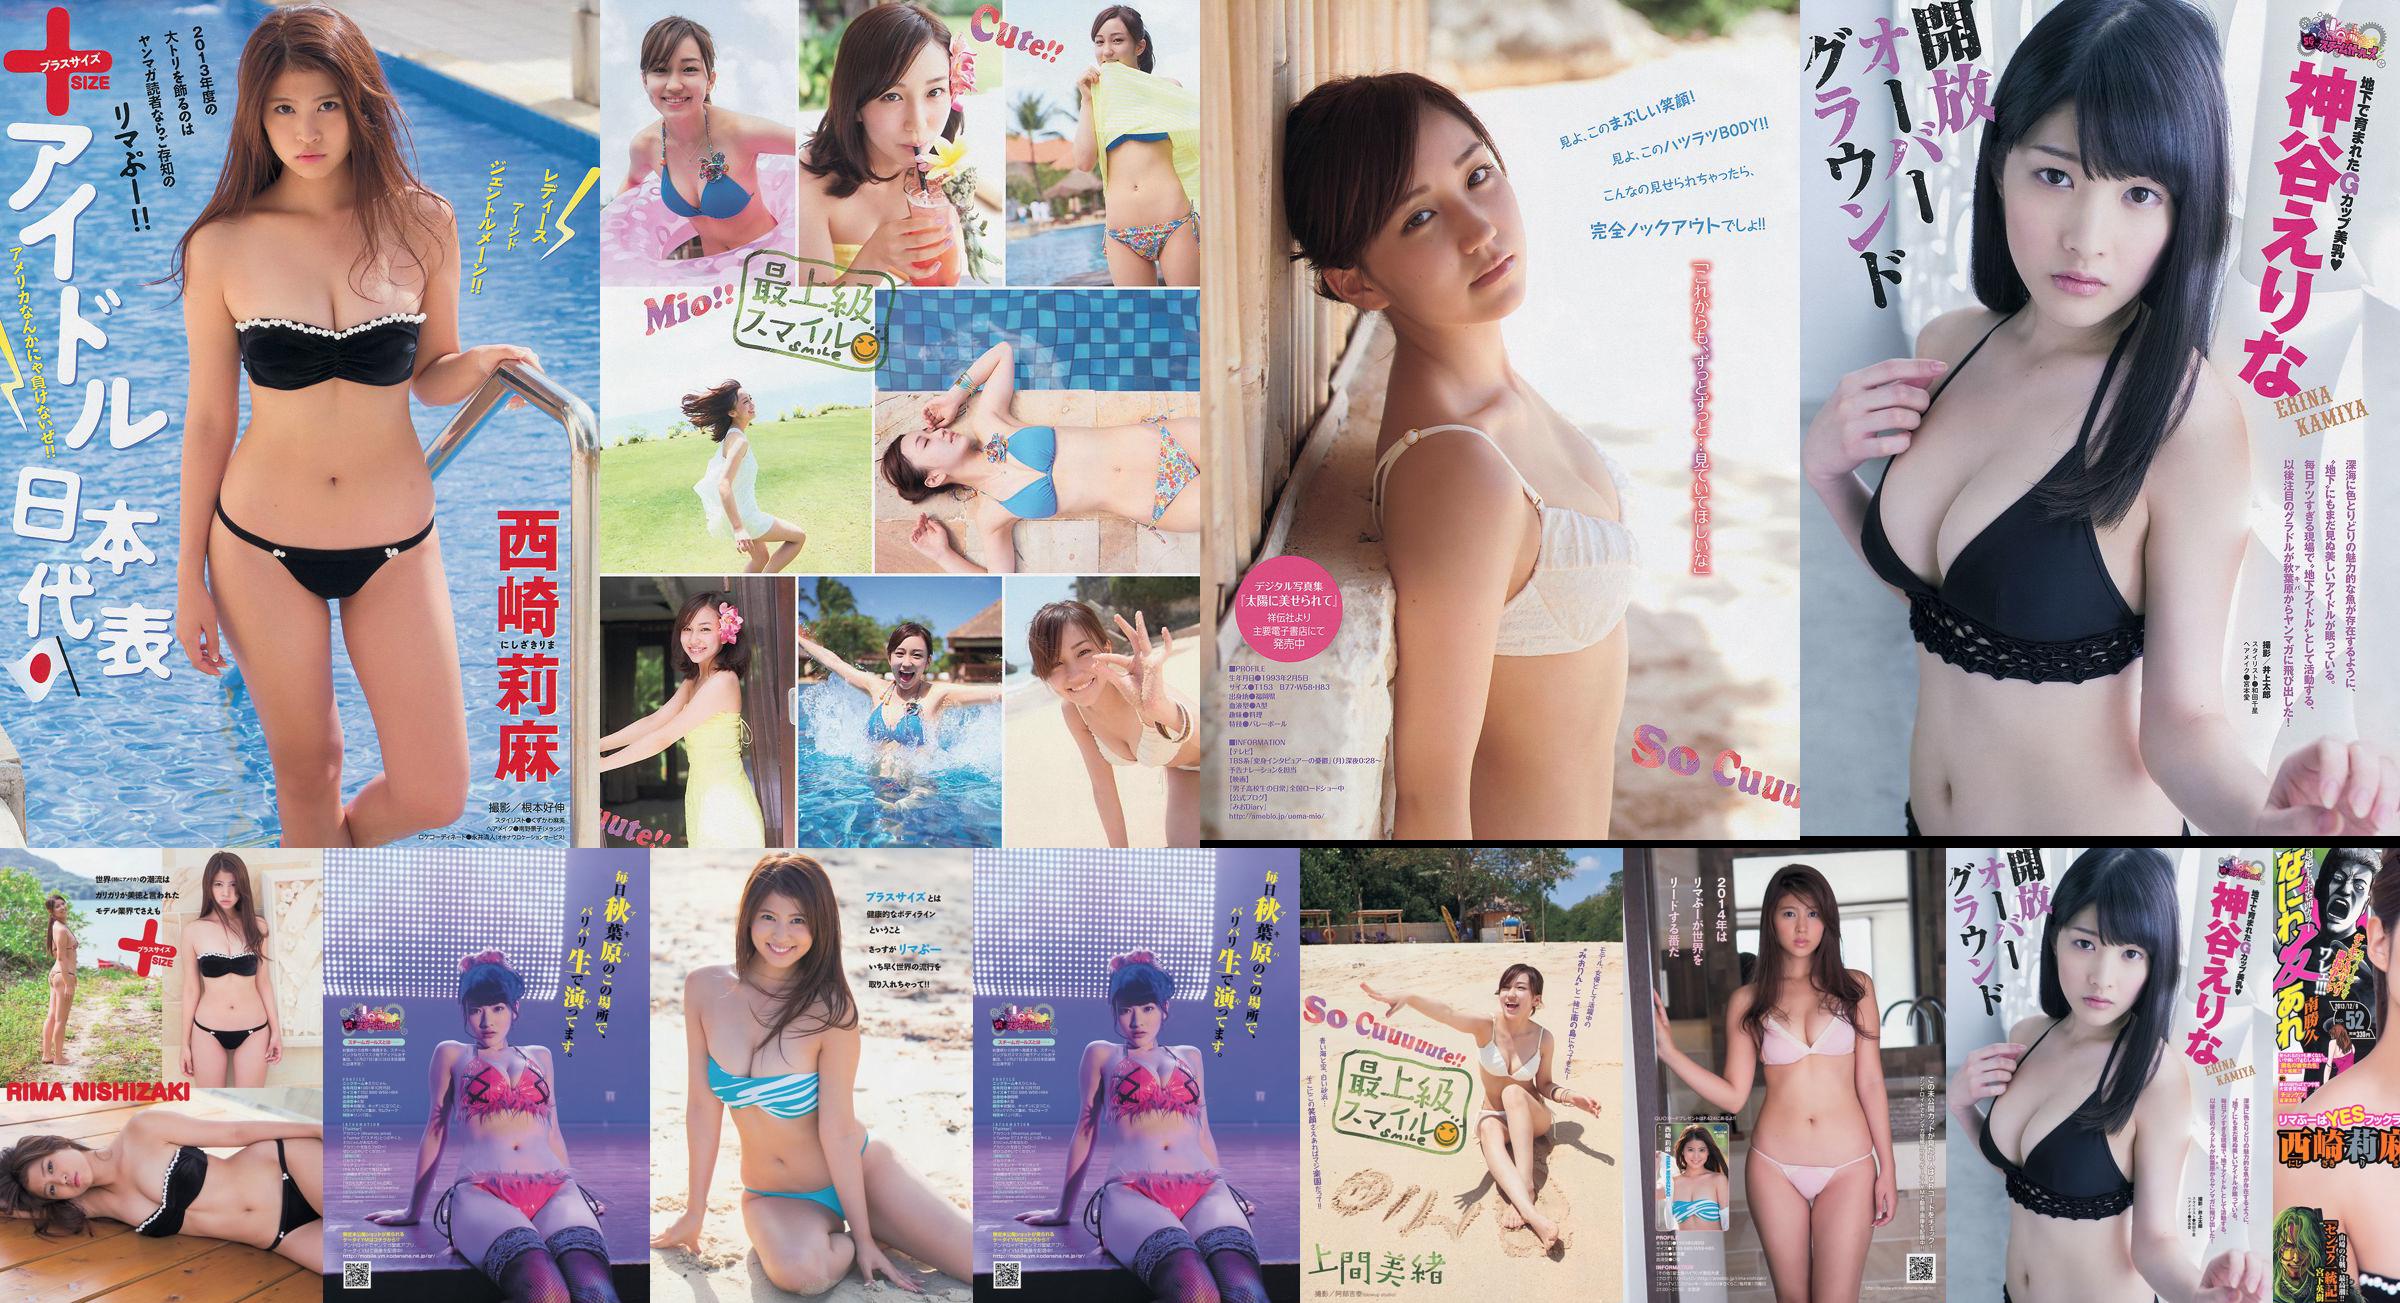 [Junge Zeitschrift] Rima Nishizaki Mio Uema Erina Kamiya 2013 Nr. 52 Foto Moshi No.a949d9 Seite 1